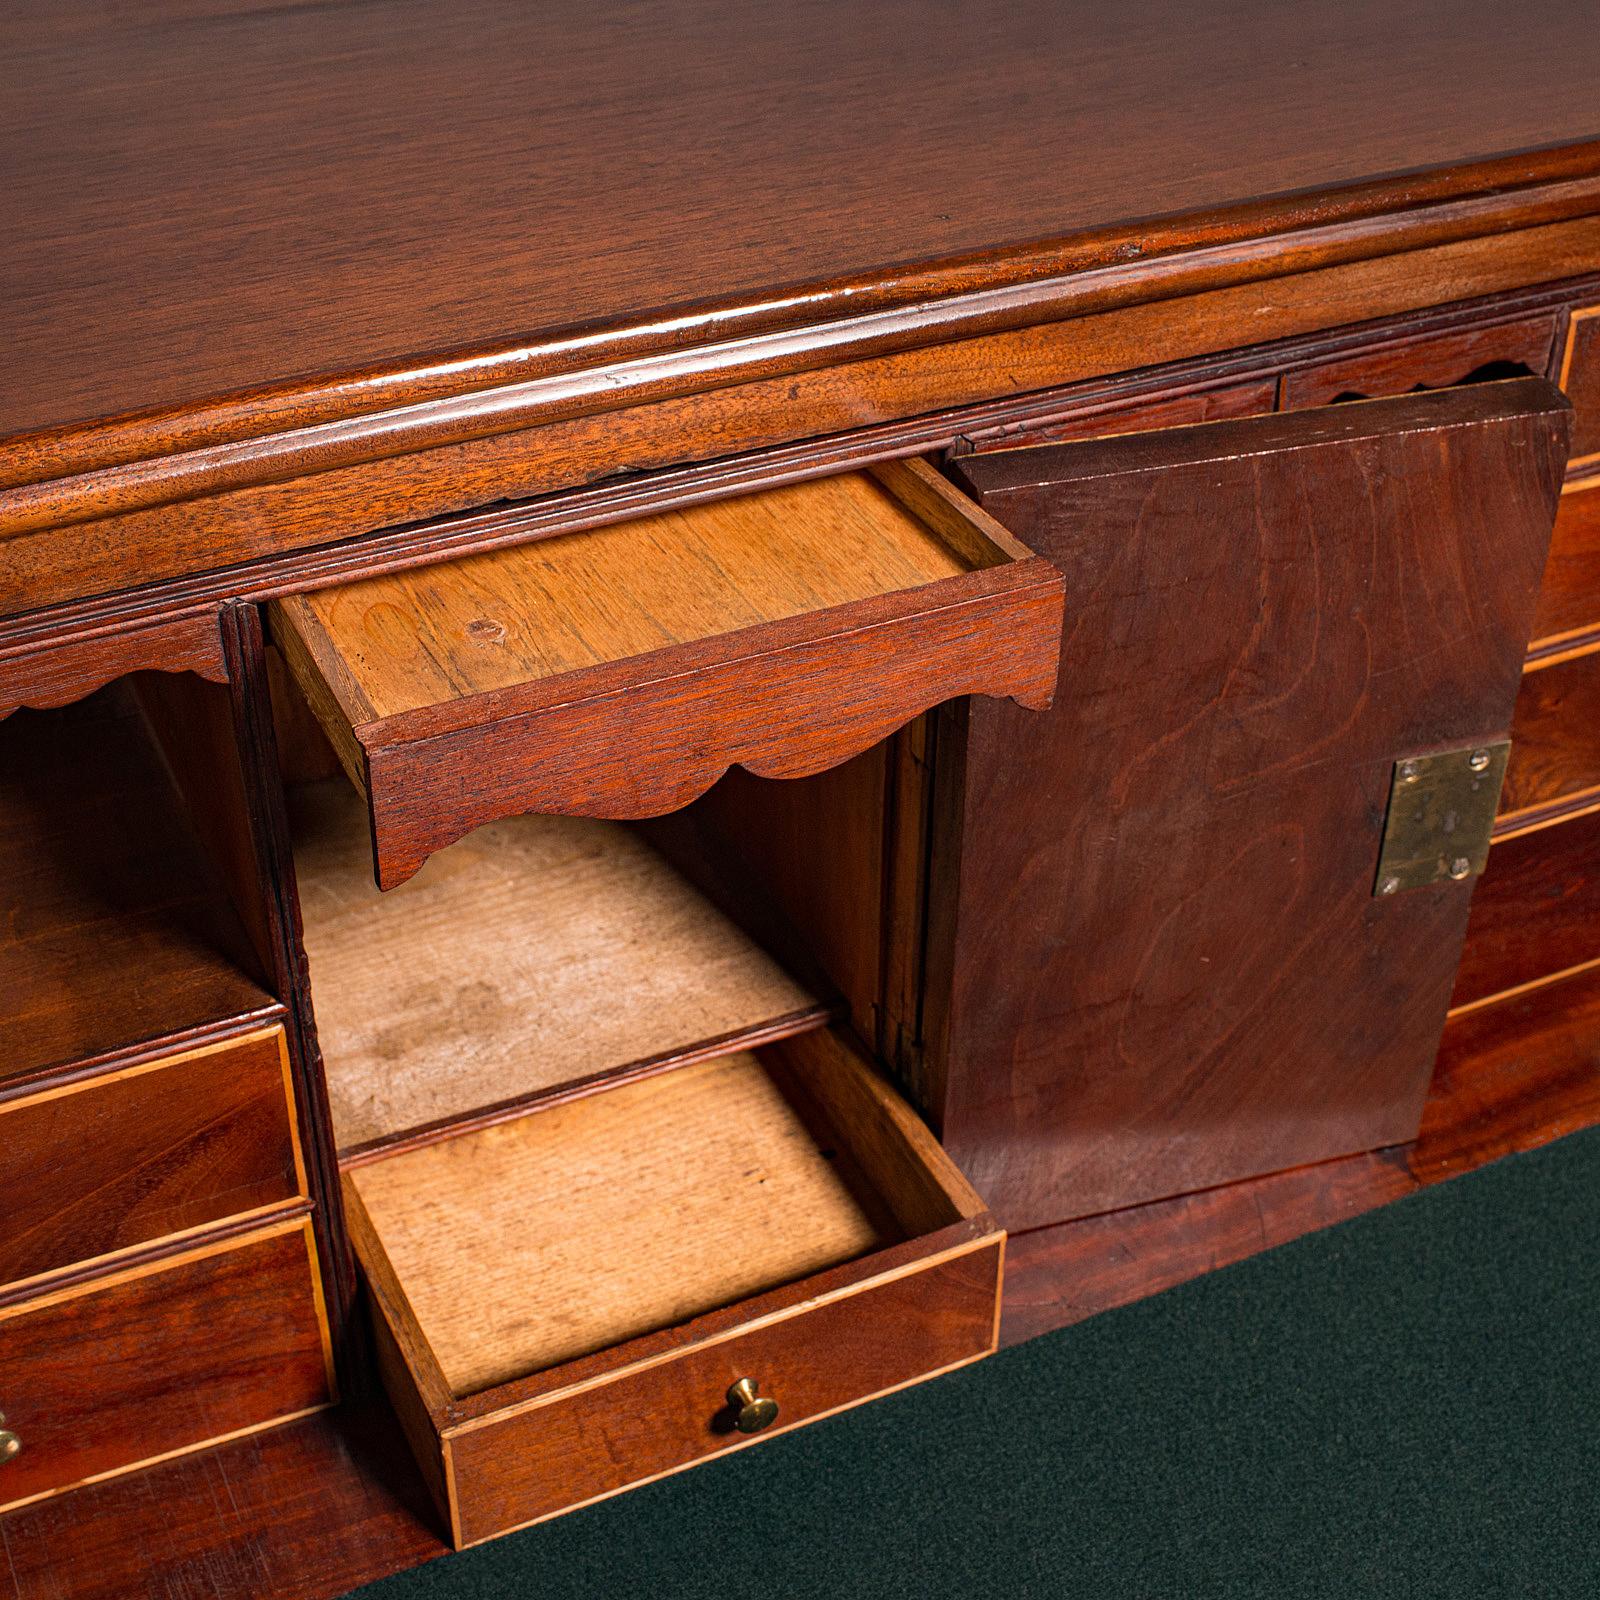 Wood Antique Secretaire Cabinet, English, Chest of Drawers, Bureau, Desk, Georgian For Sale